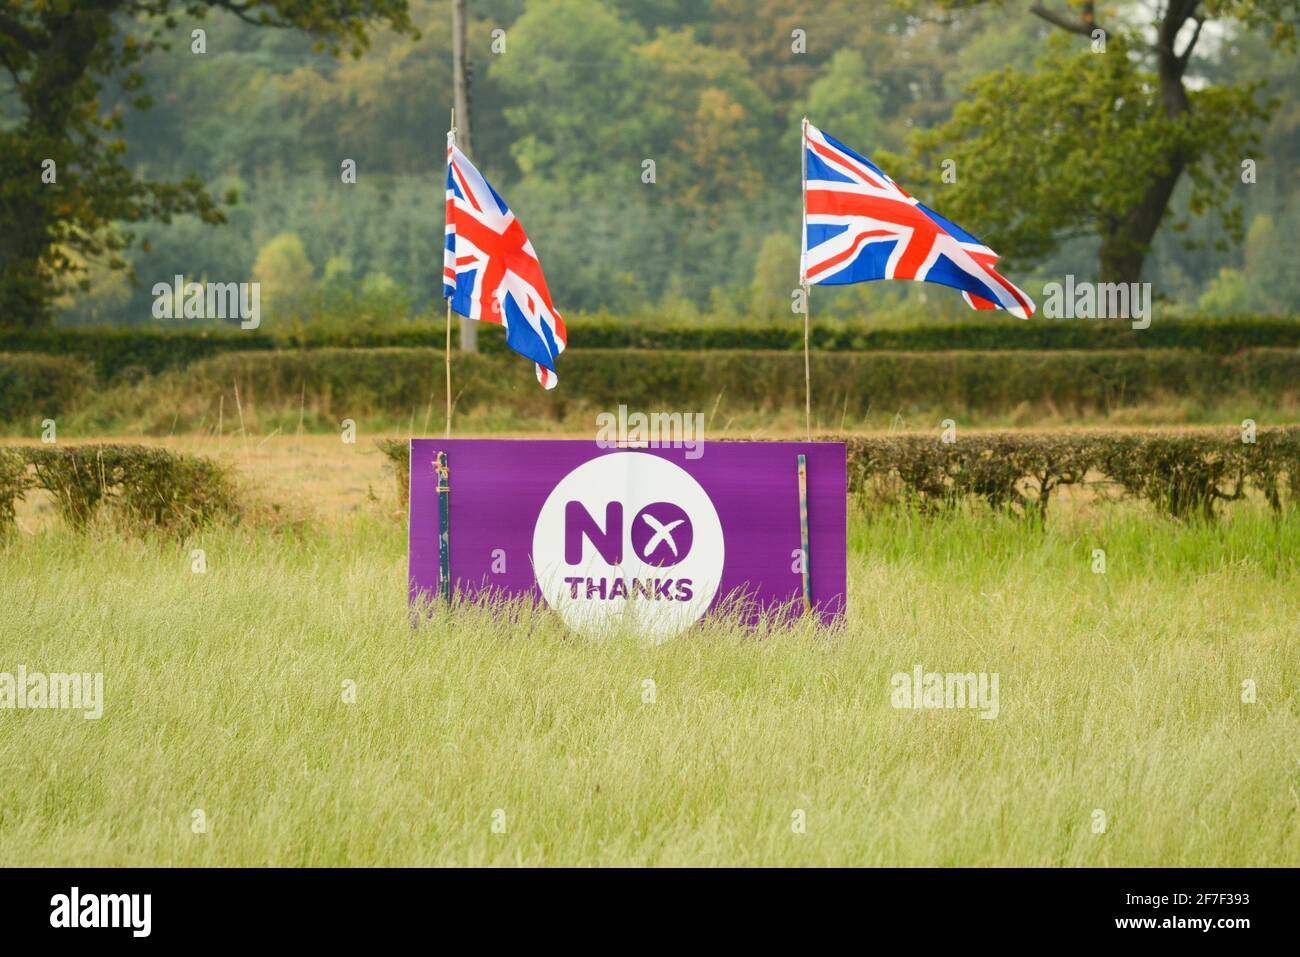 Non Thanks Sign fait partie de la campagne Better Together lors du référendum sur l'indépendance de l'Écosse en 2014, Stirling, Écosse, Royaume-Uni Banque D'Images